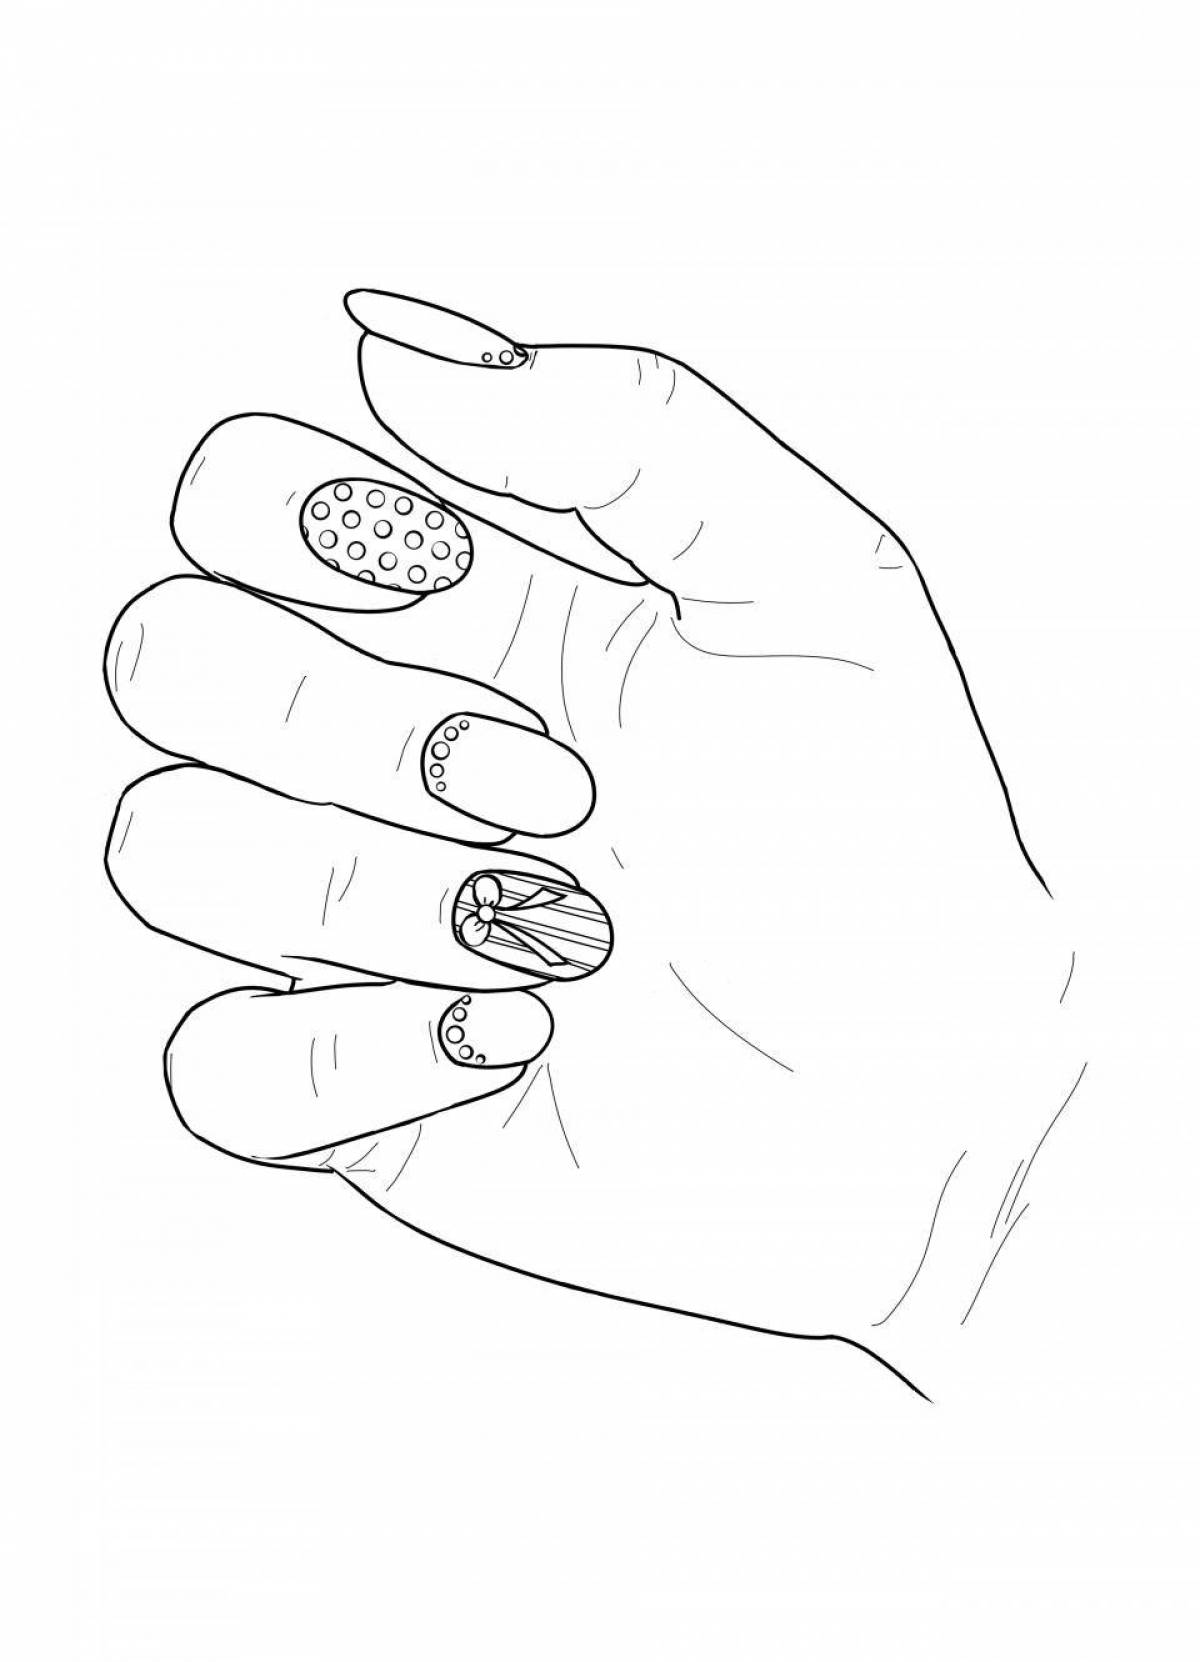 Игра для девочек: Маникюр и узор на ногтях